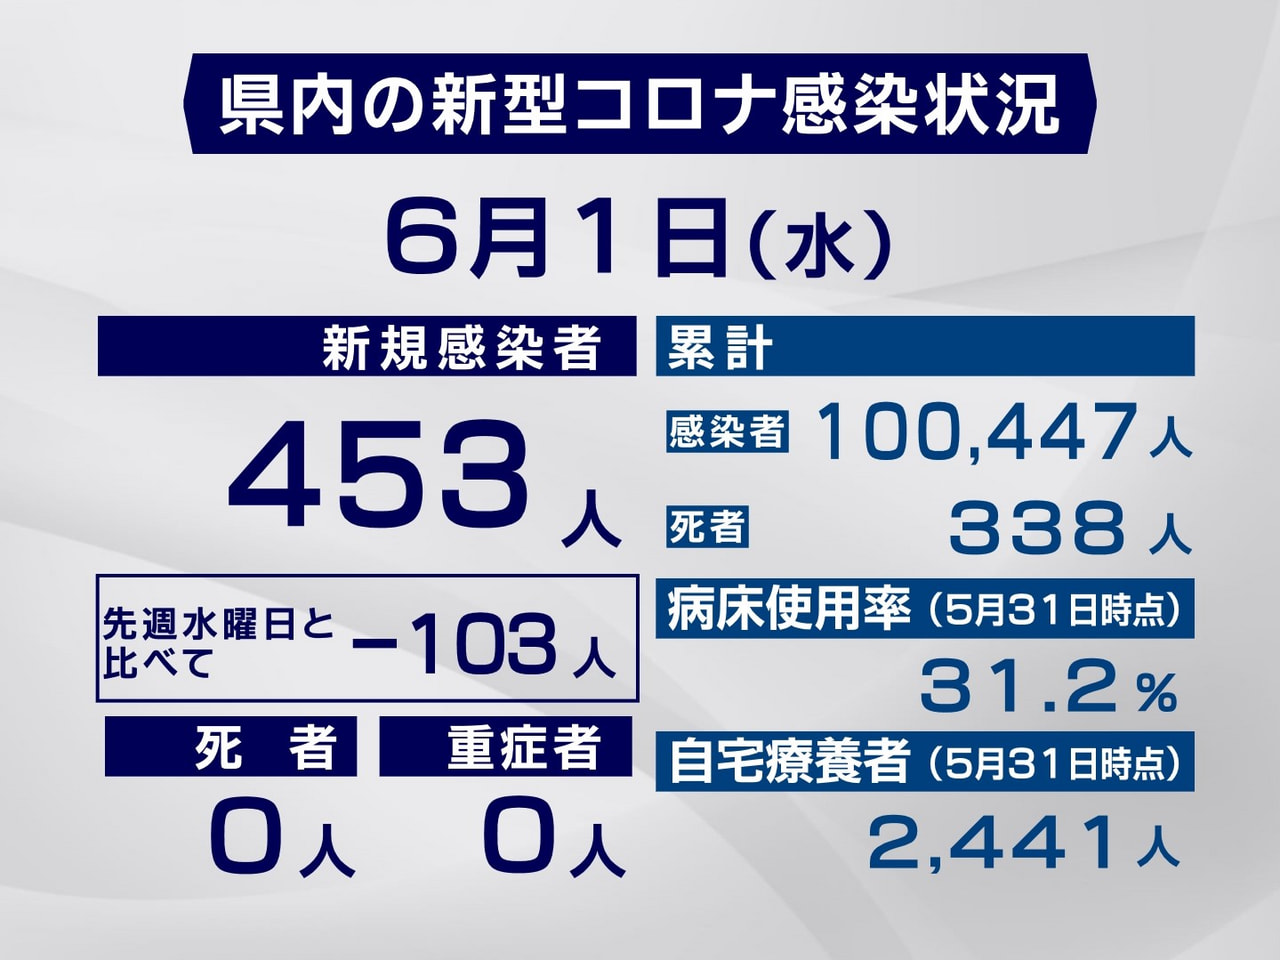 岐阜県は１日、新型コロナウイルスの新規感染者が４５３人確認されたと発表しました。...